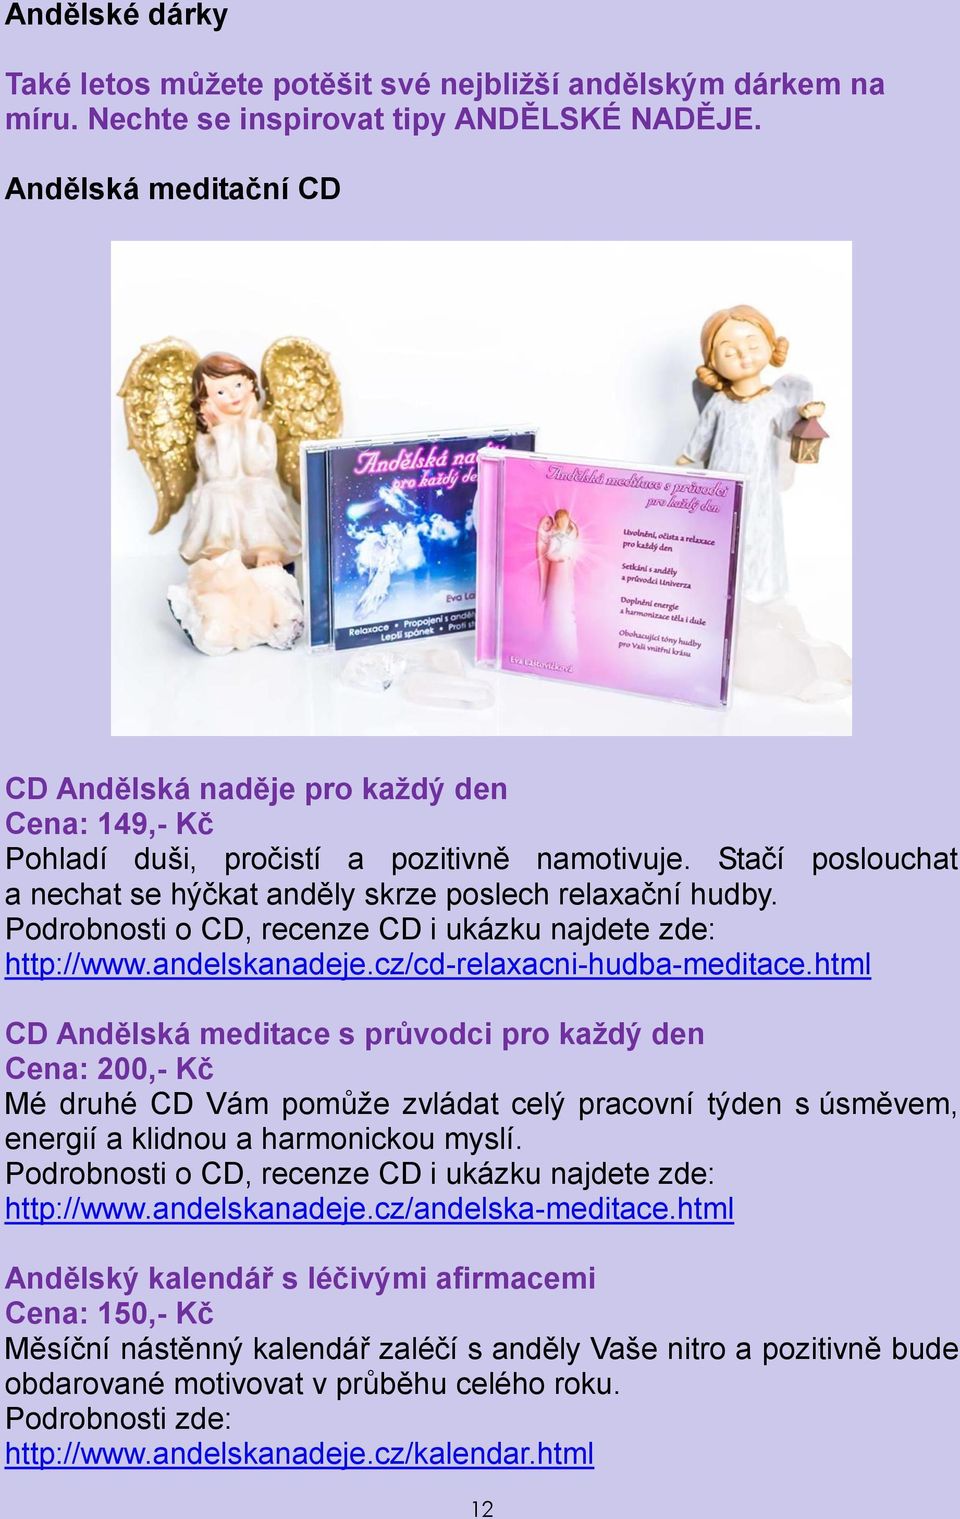 Podrobnosti o CD, recenze CD i ukázku najdete zde: http://www.andelskanadeje.cz/cd-relaxacni-hudba-meditace.